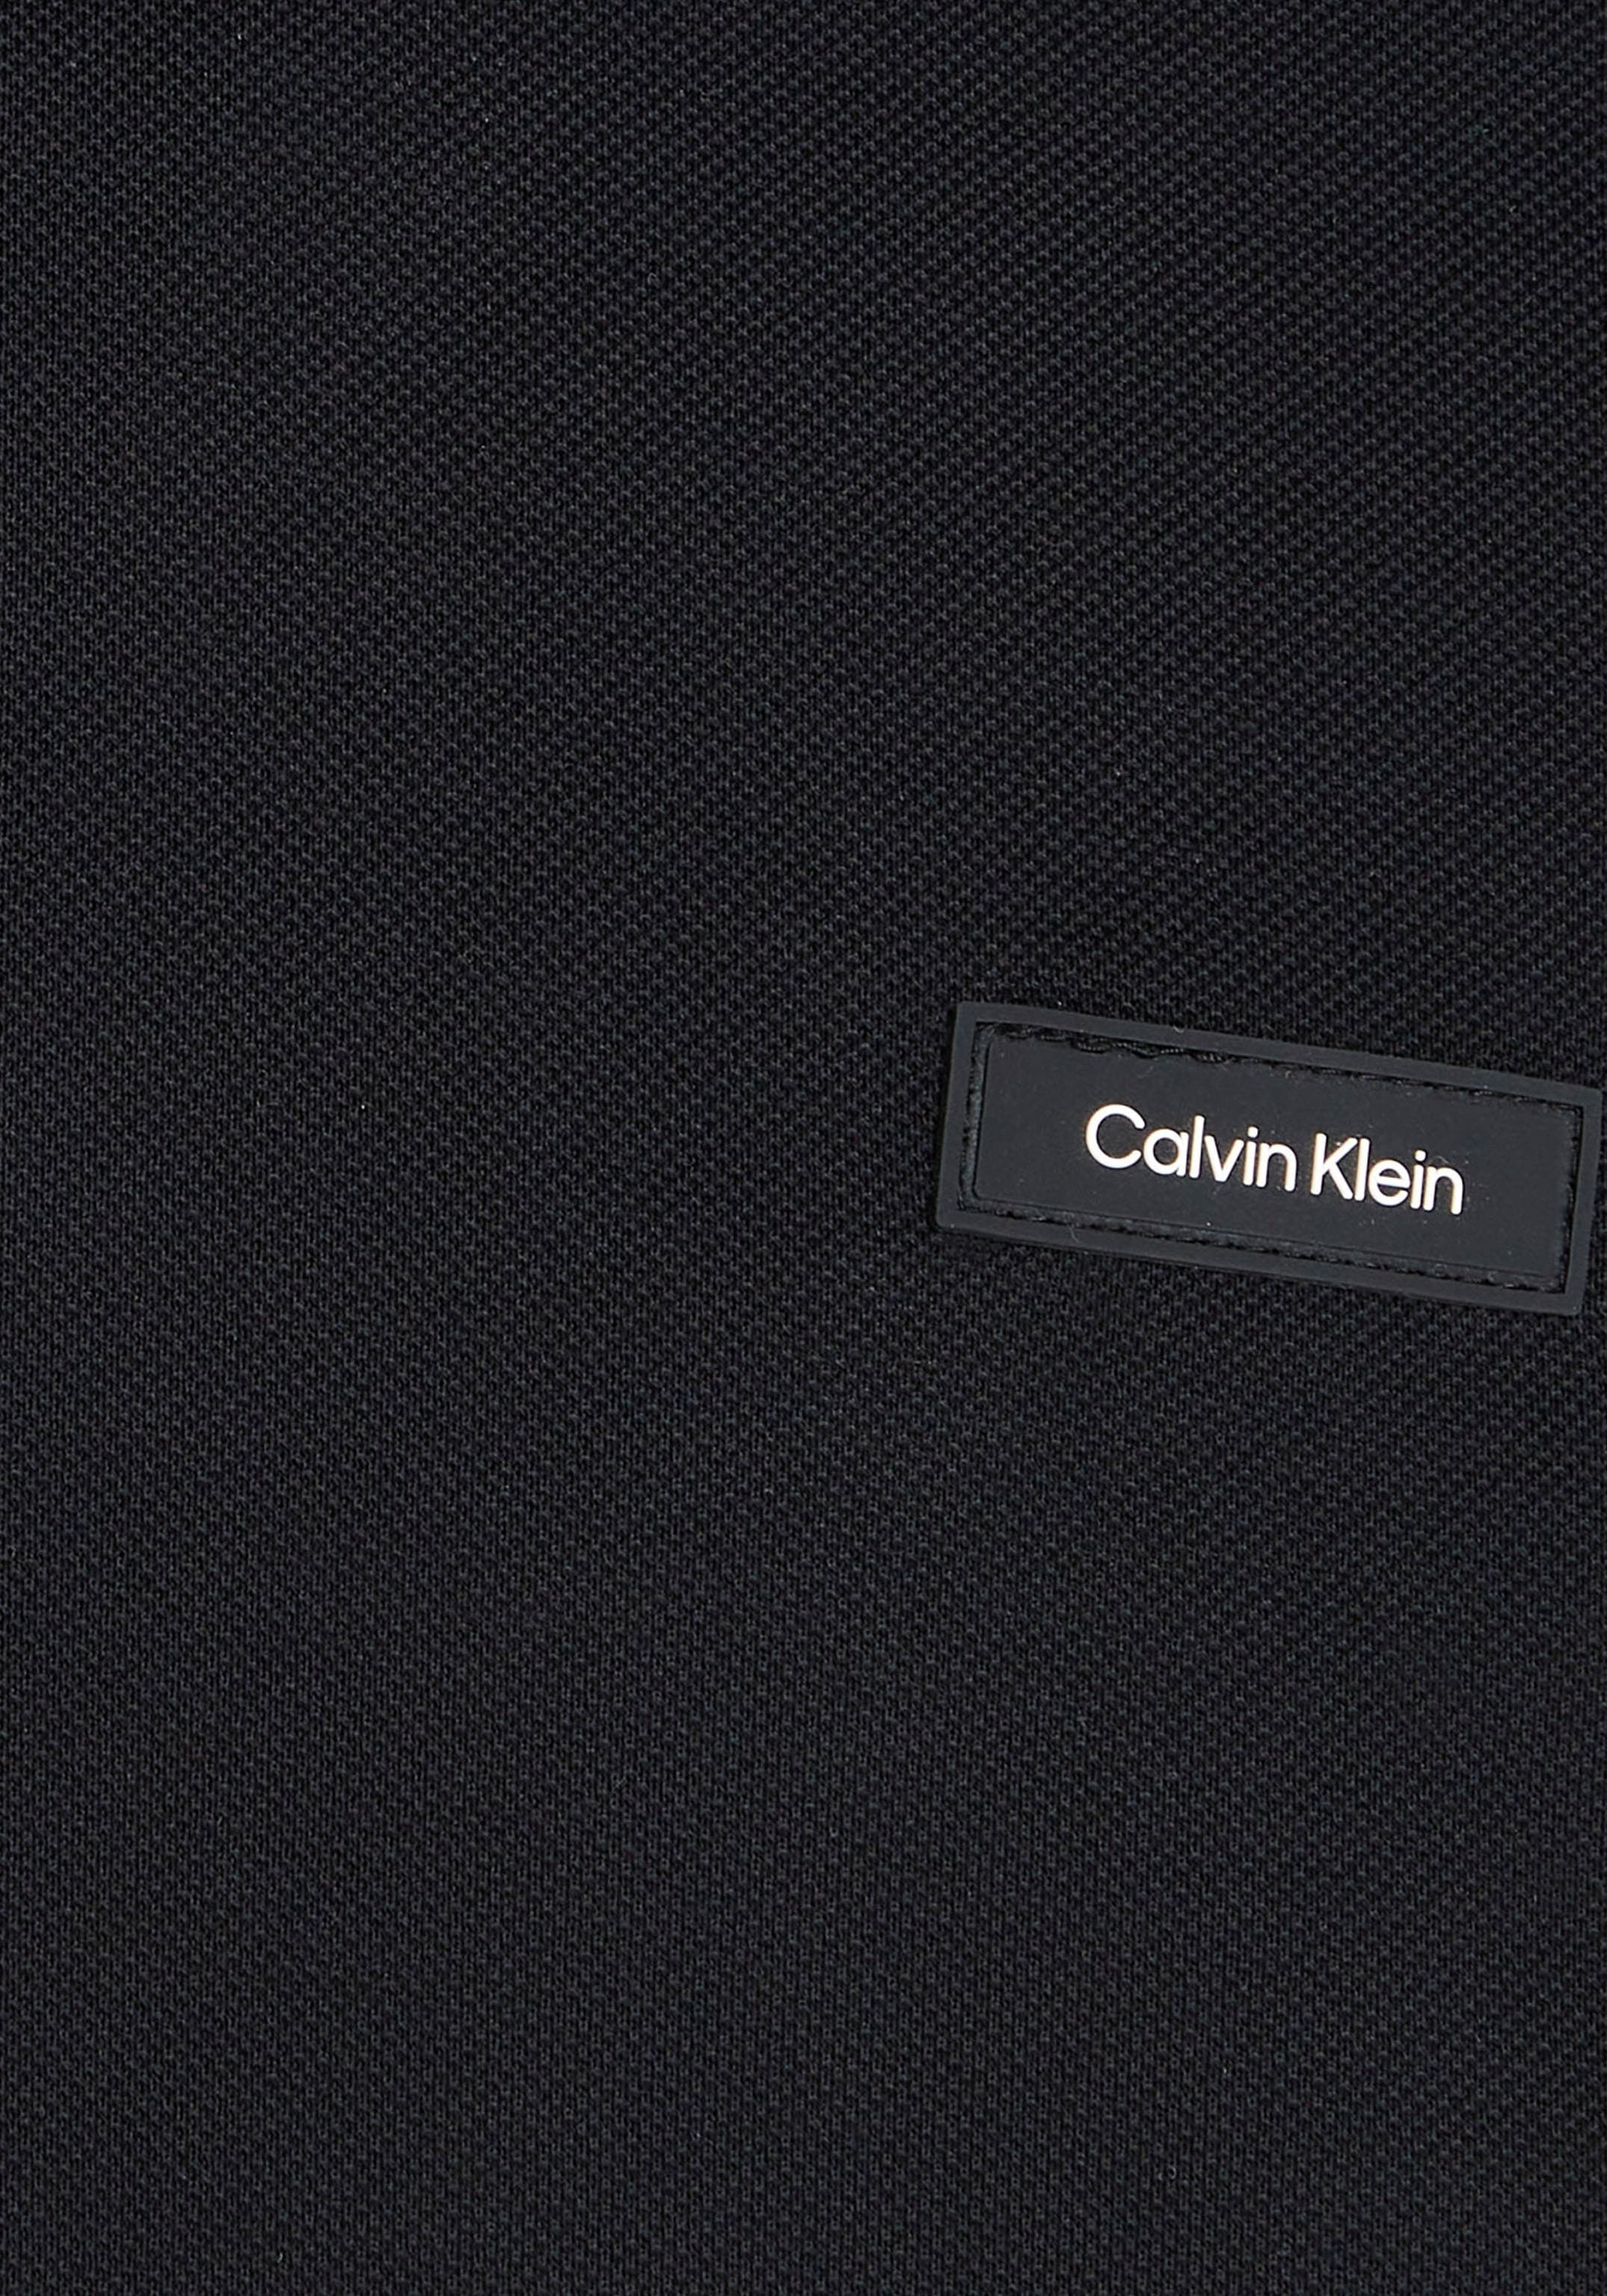 ♕ Calvin mit Poloshirt, Brust auf Logo bei Klein Klein Calvin der